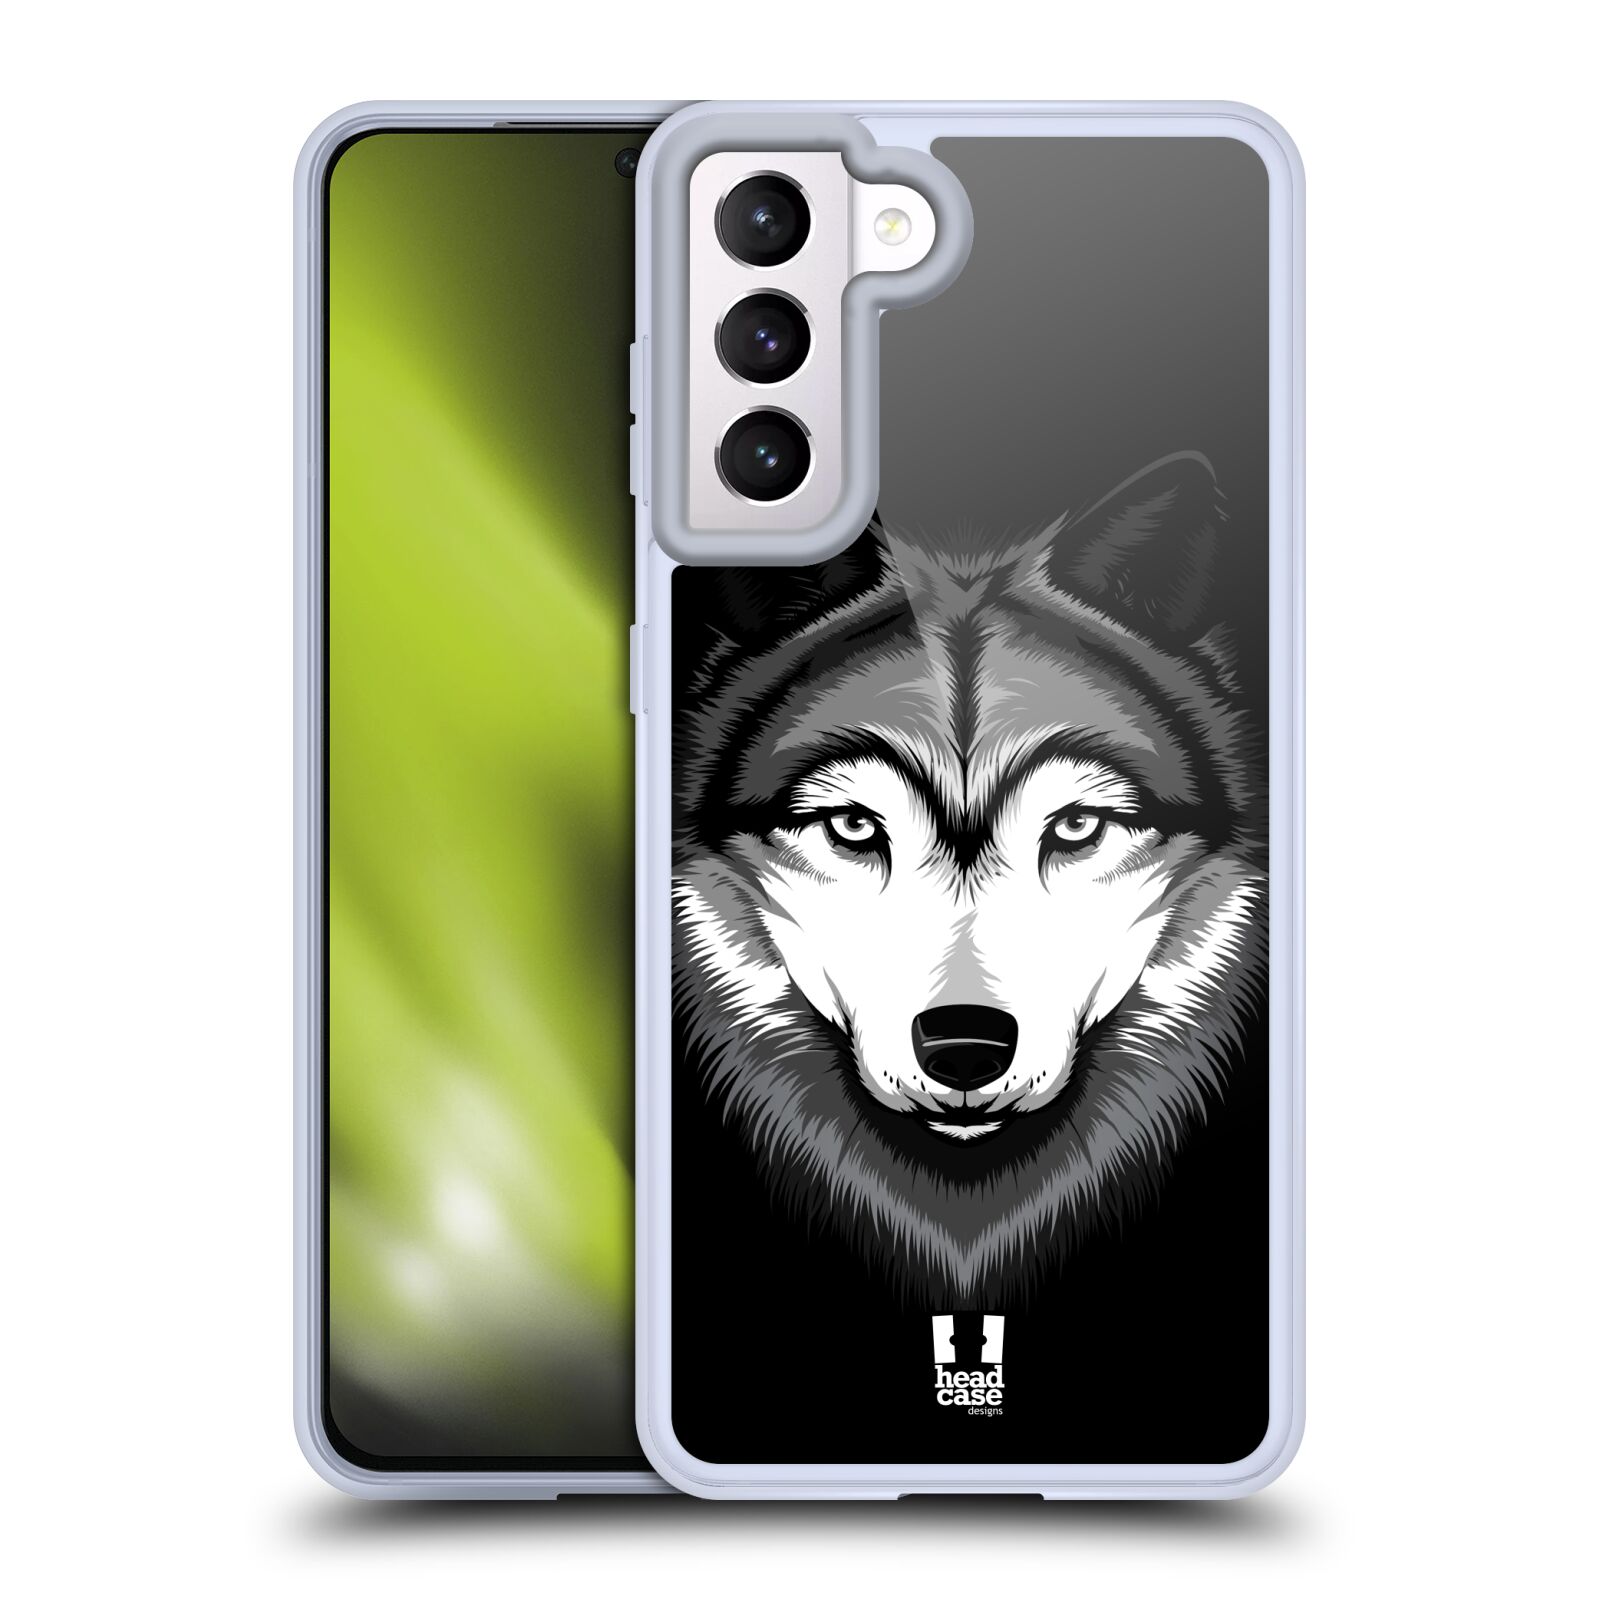 Plastový obal HEAD CASE na mobil Samsung Galaxy S21 5G vzor Zvíře kreslená tvář 2 vlk